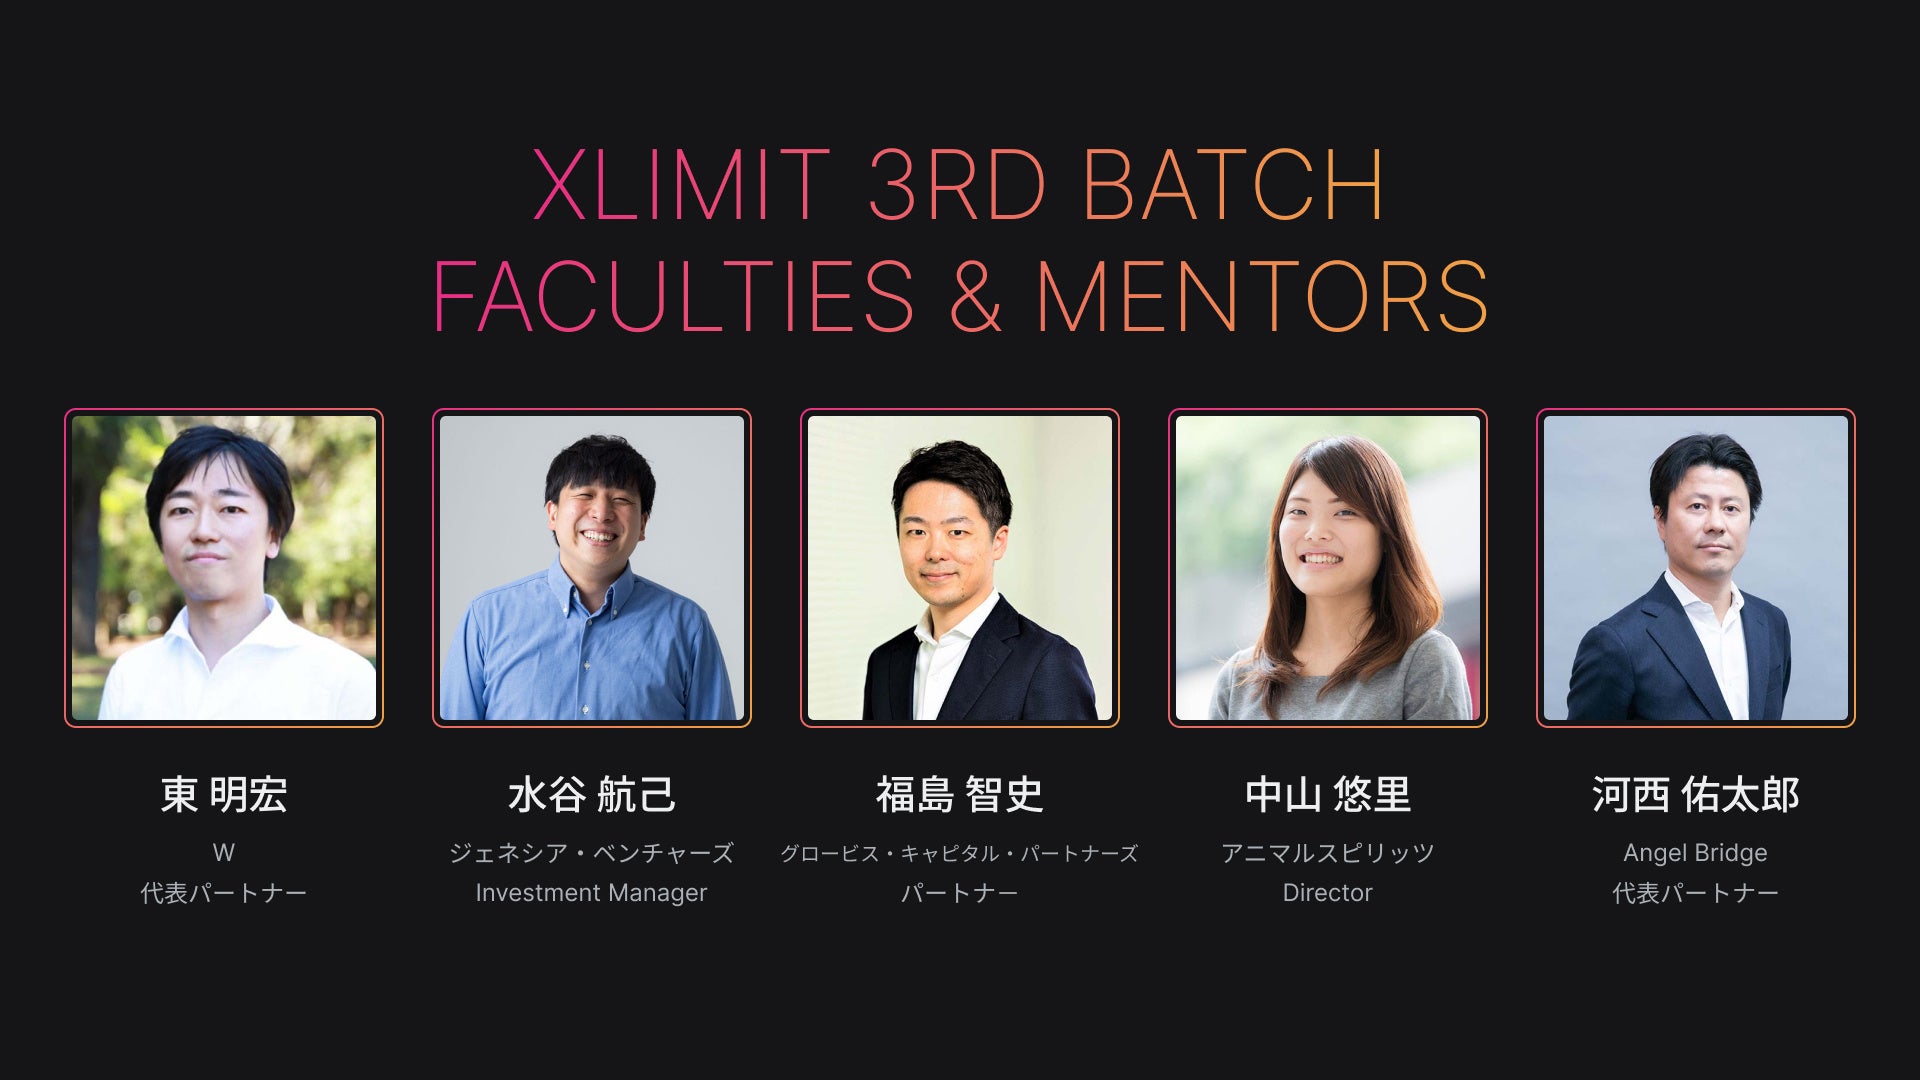 グローバル・ブレインが運営するアクセラレータープログラム『XLIMIT』3rd Batchで、採択企業を担当するメンターを決定